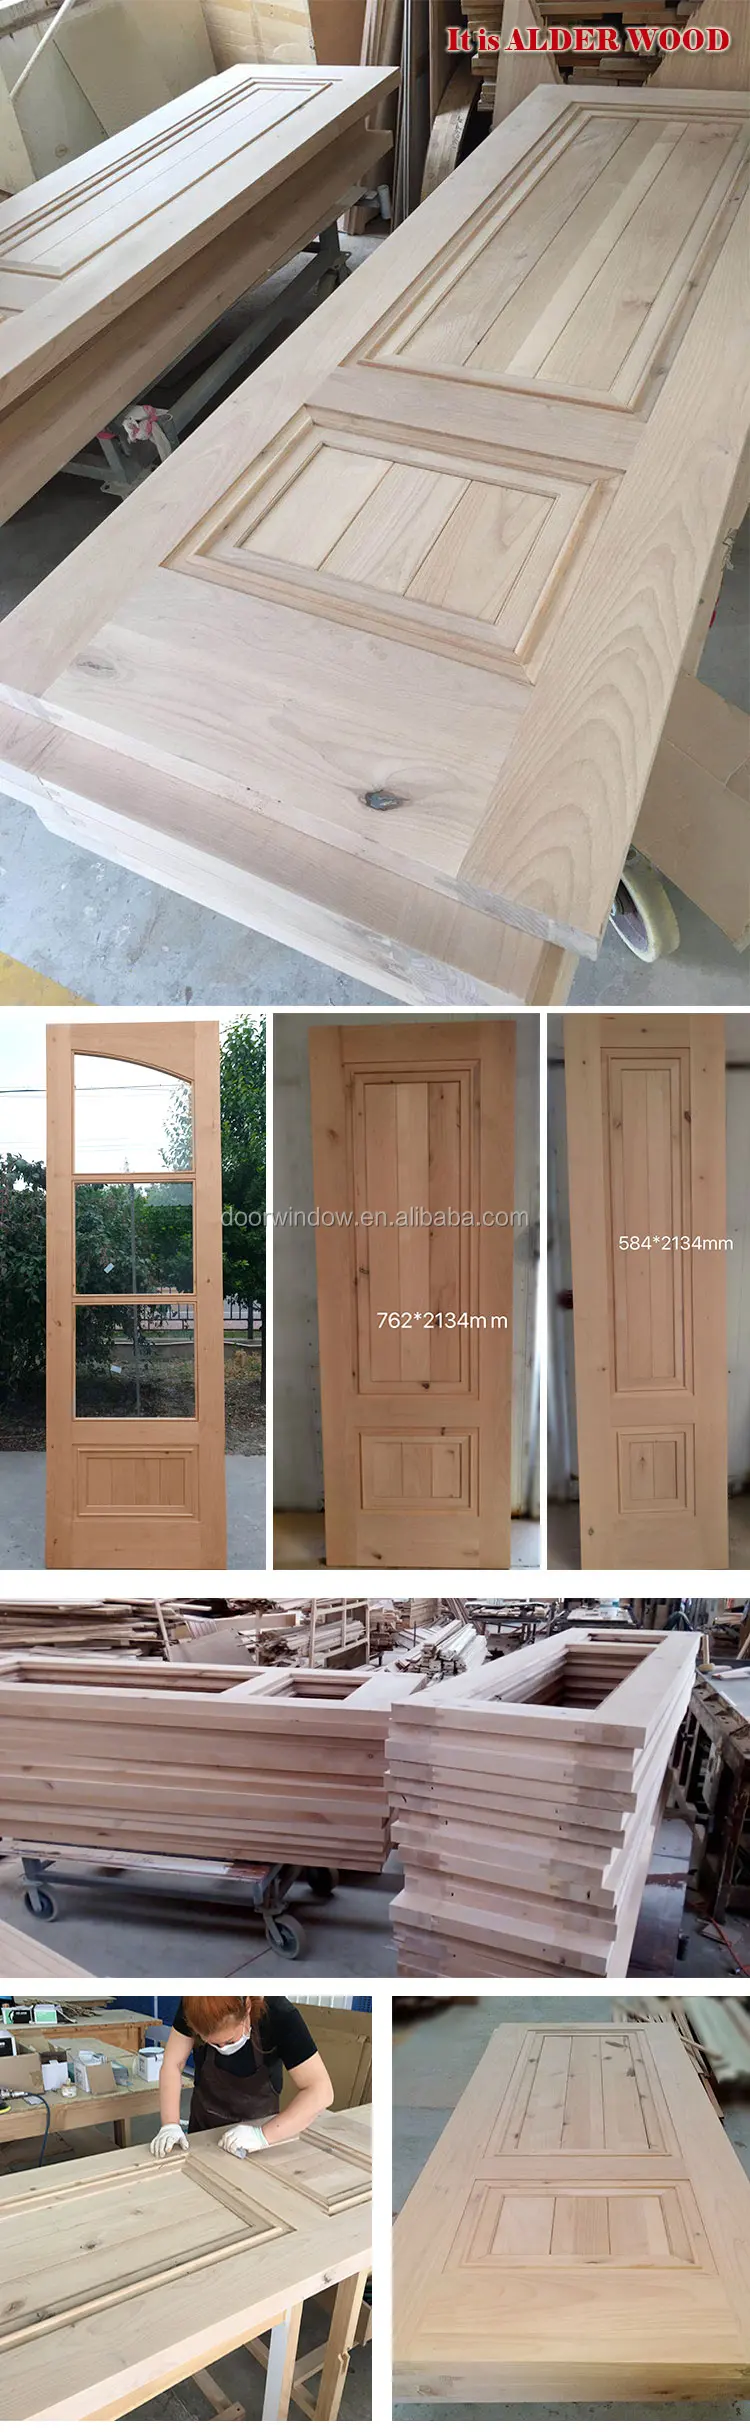 Latest wooden door and window frame design,interior door